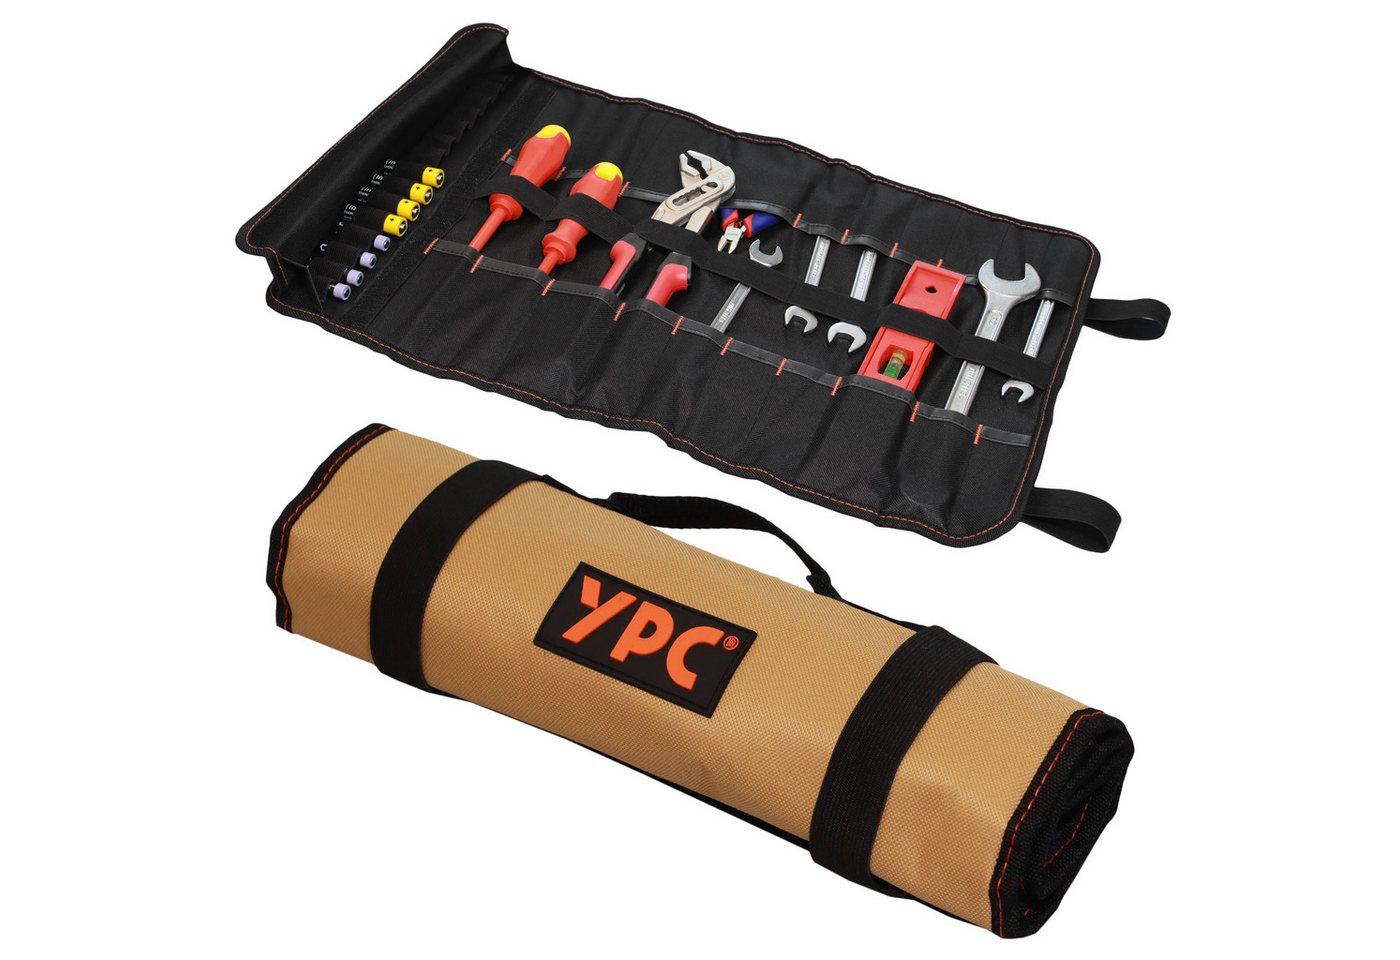 YPC Werkzeugtasche VarioRoll XL" Werkzeug Rolltasche 56x34cm, reißfest, robust, wasserabweisend, XL Abmessungen, praktisch" von YPC